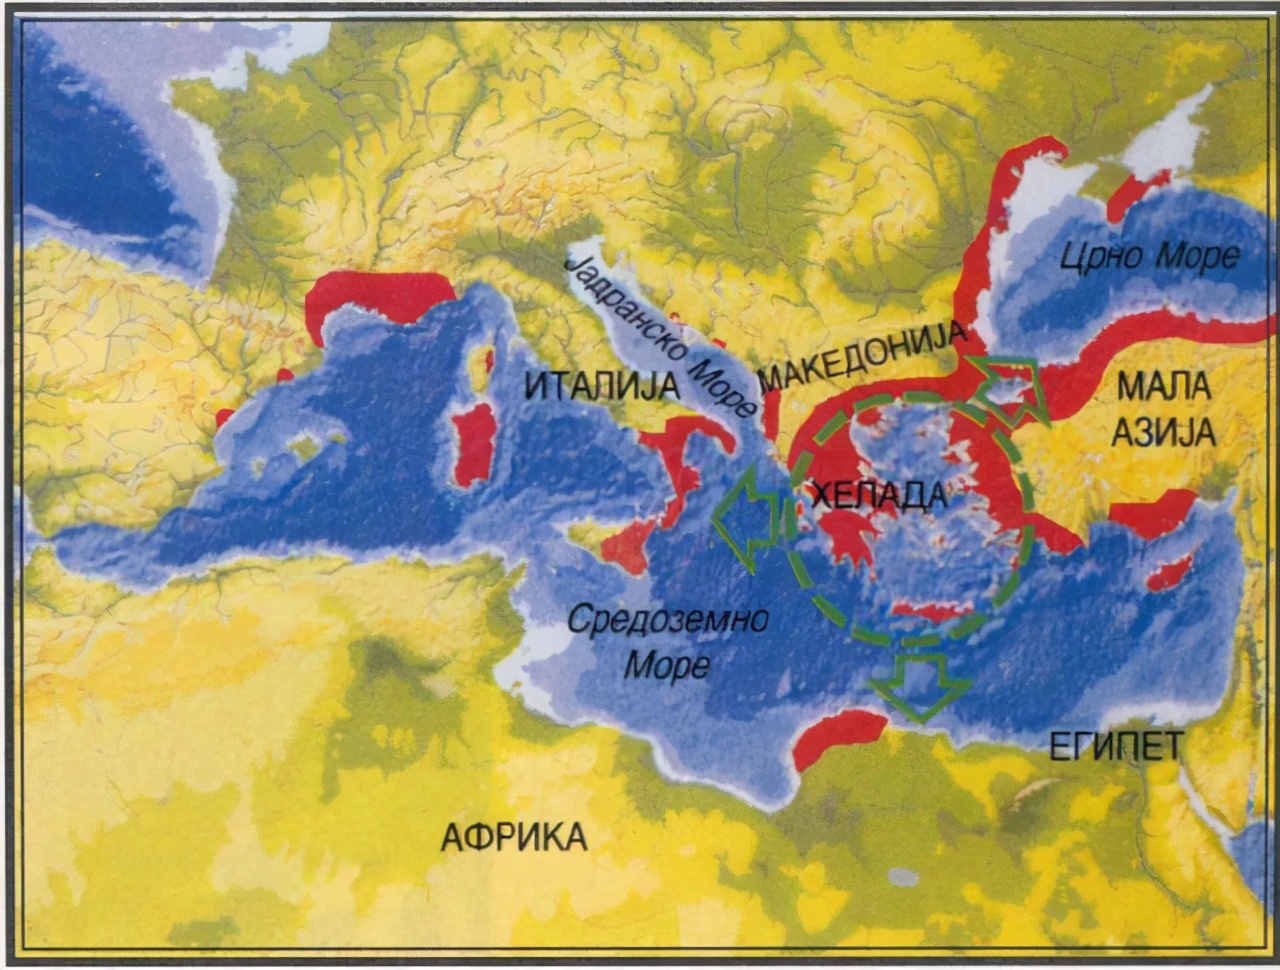 西班牙足球什么时候崛起的(从史前时期到罗马时代，伊比利亚半岛文明初形成——西班牙简史)